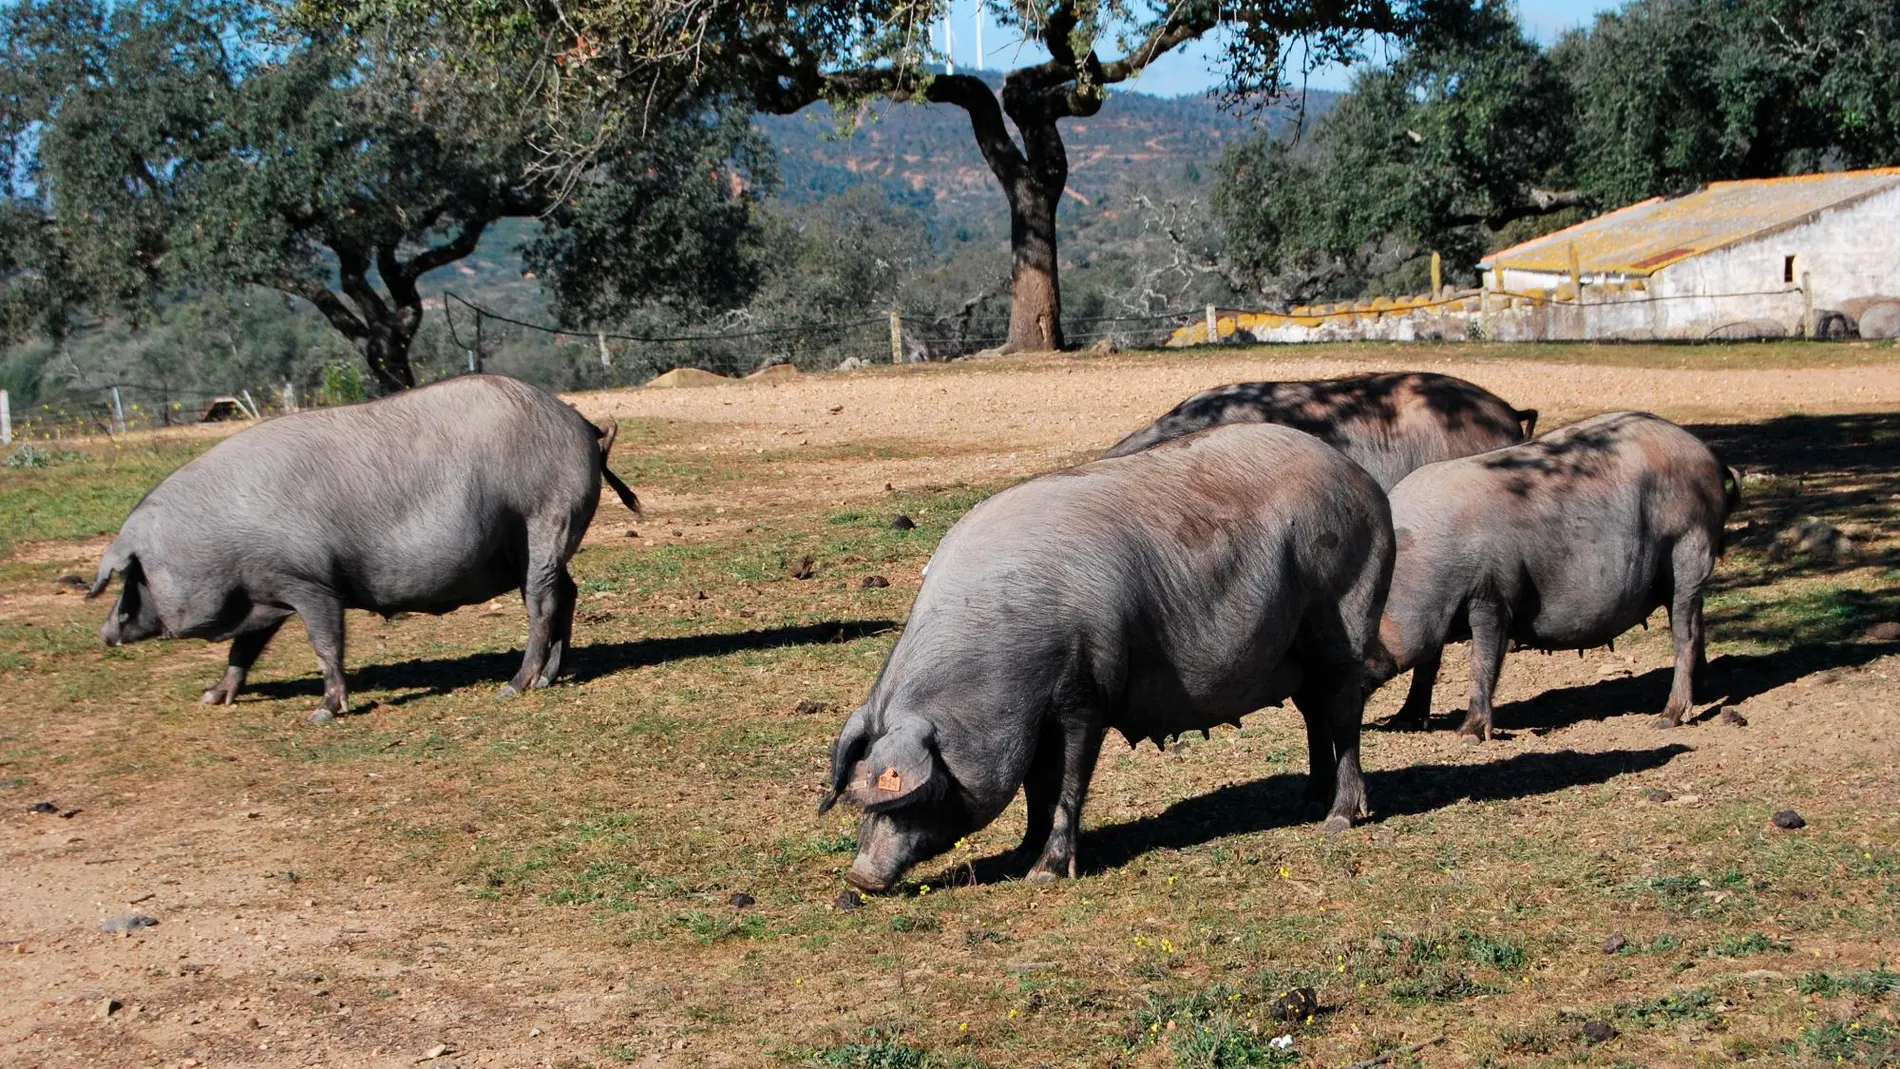 Quedan menos de 6.000 reproductores de cerdo ibérico, cuando a mediados del siglo XIX existían más de 500.000 / Foto: La Razón